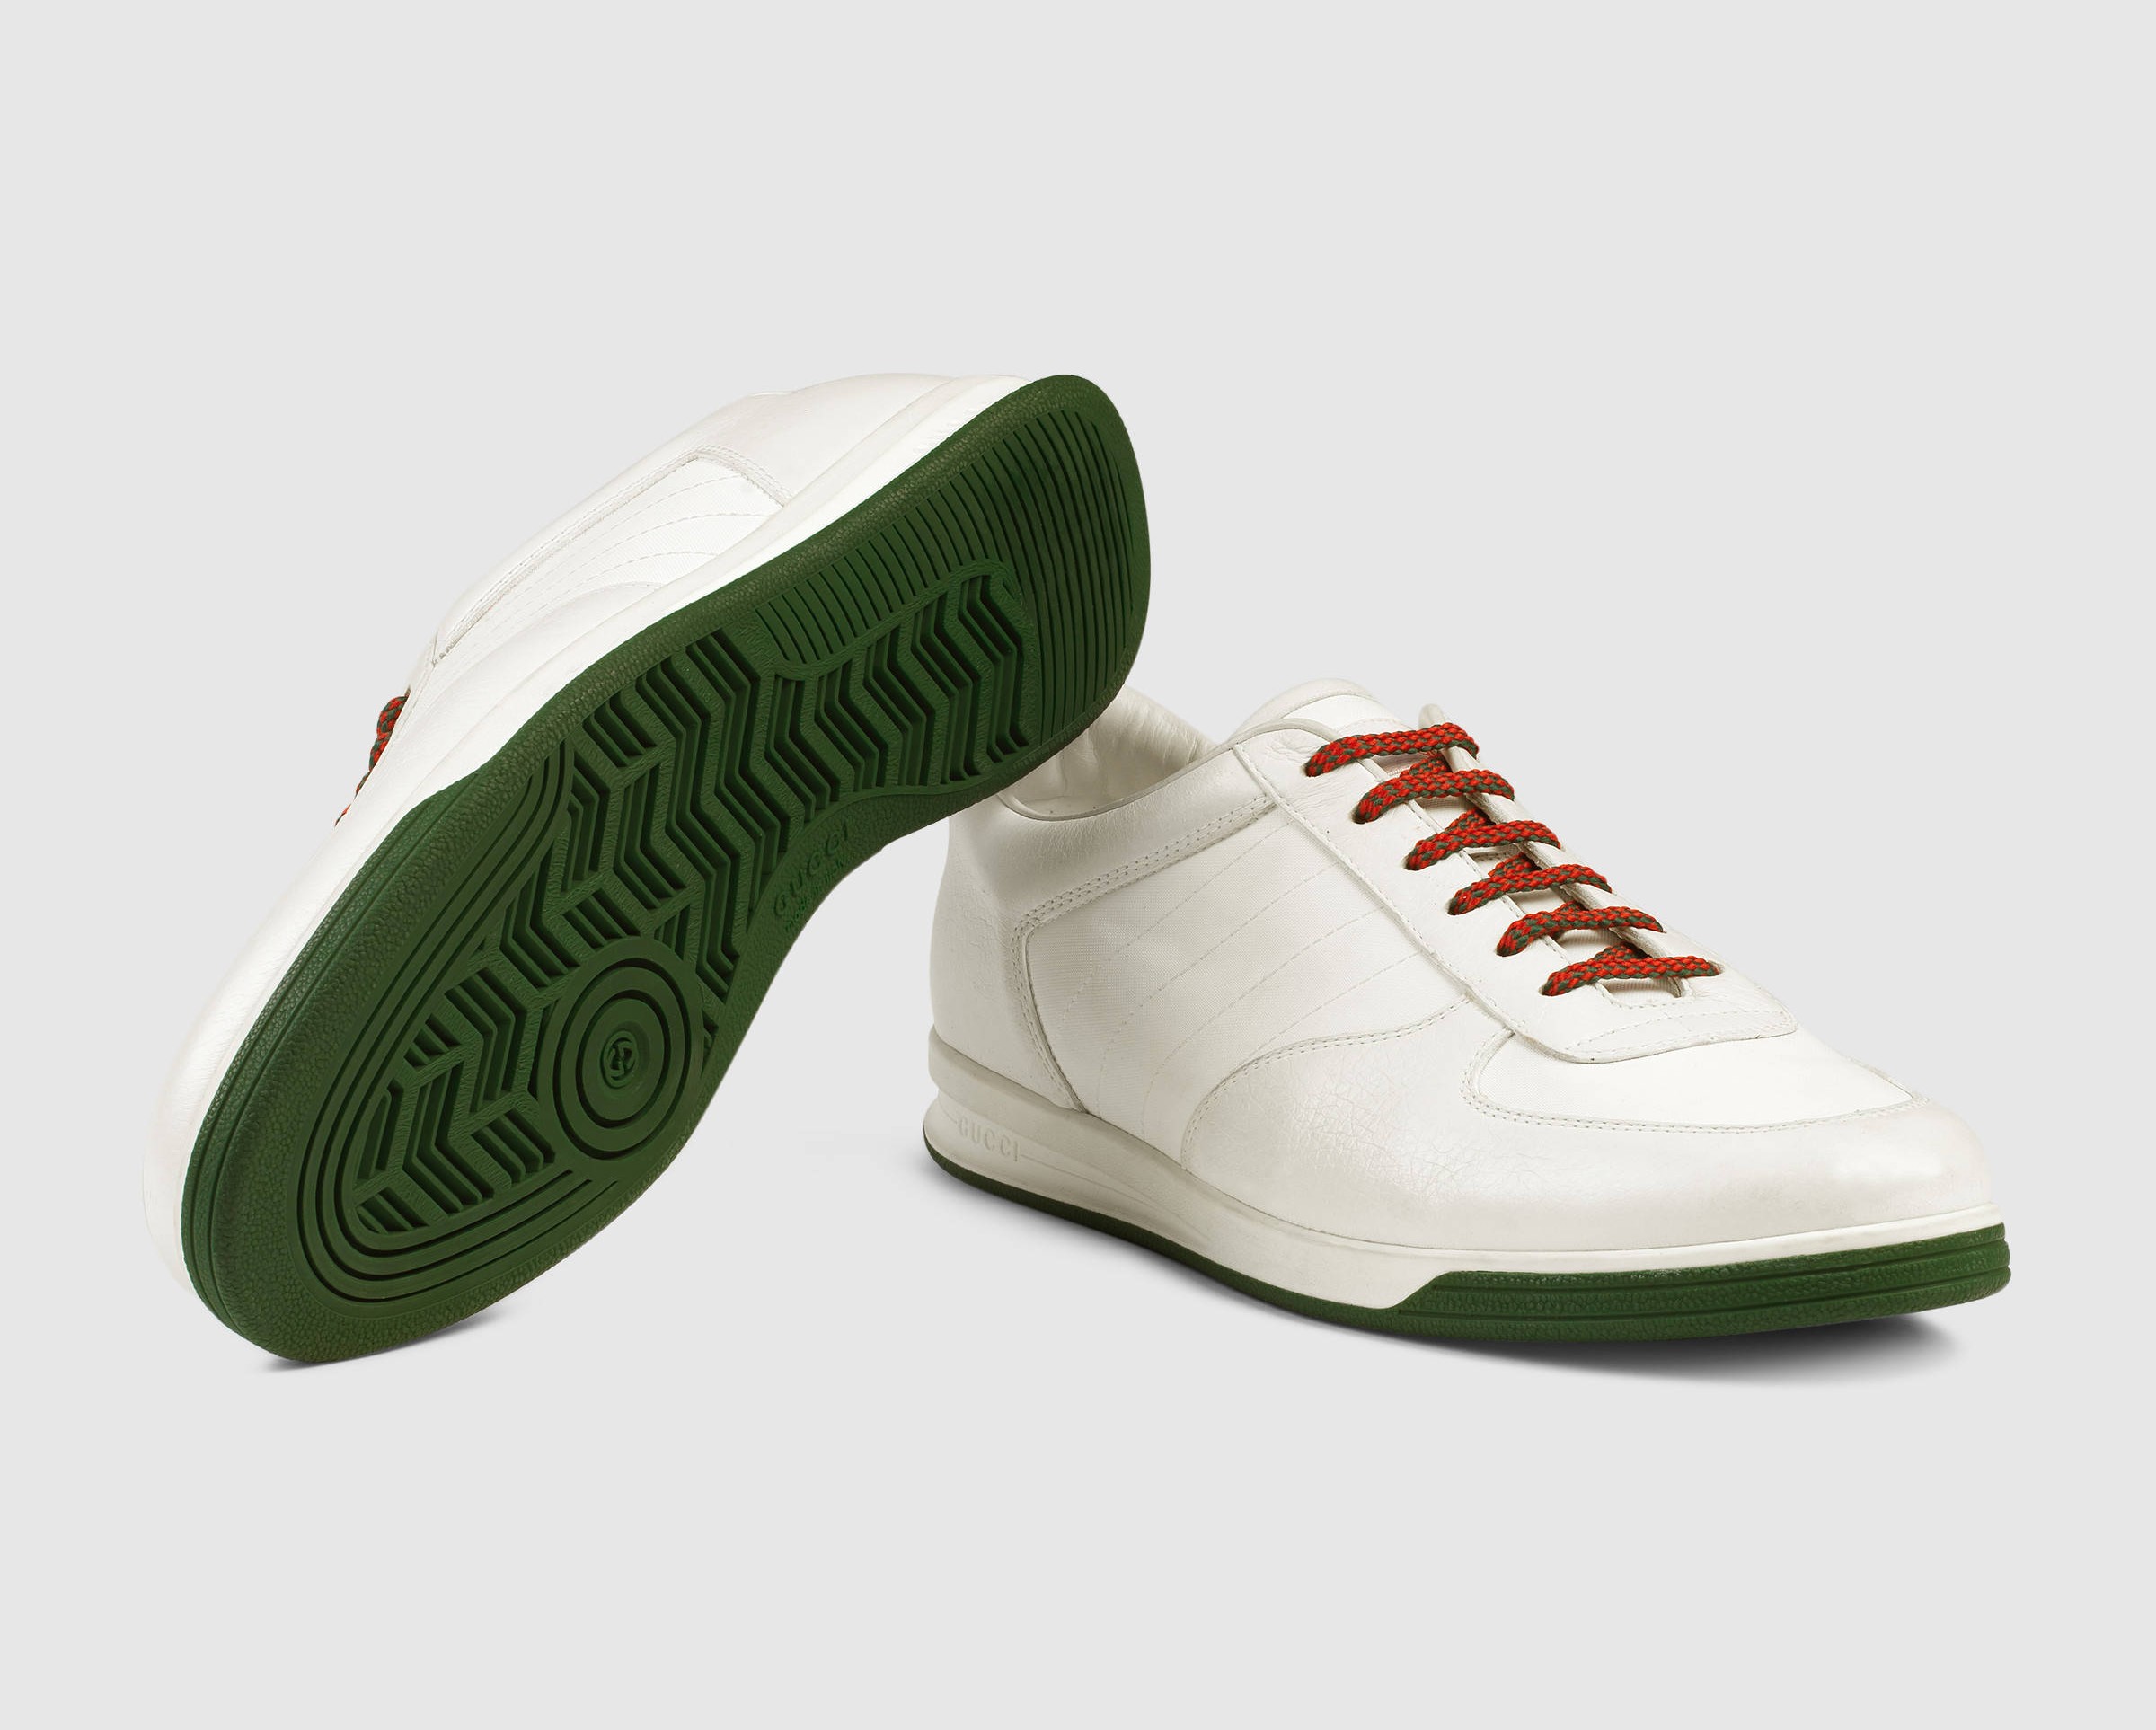 The Gucci Tennis '84 Retro Sneaker Is 